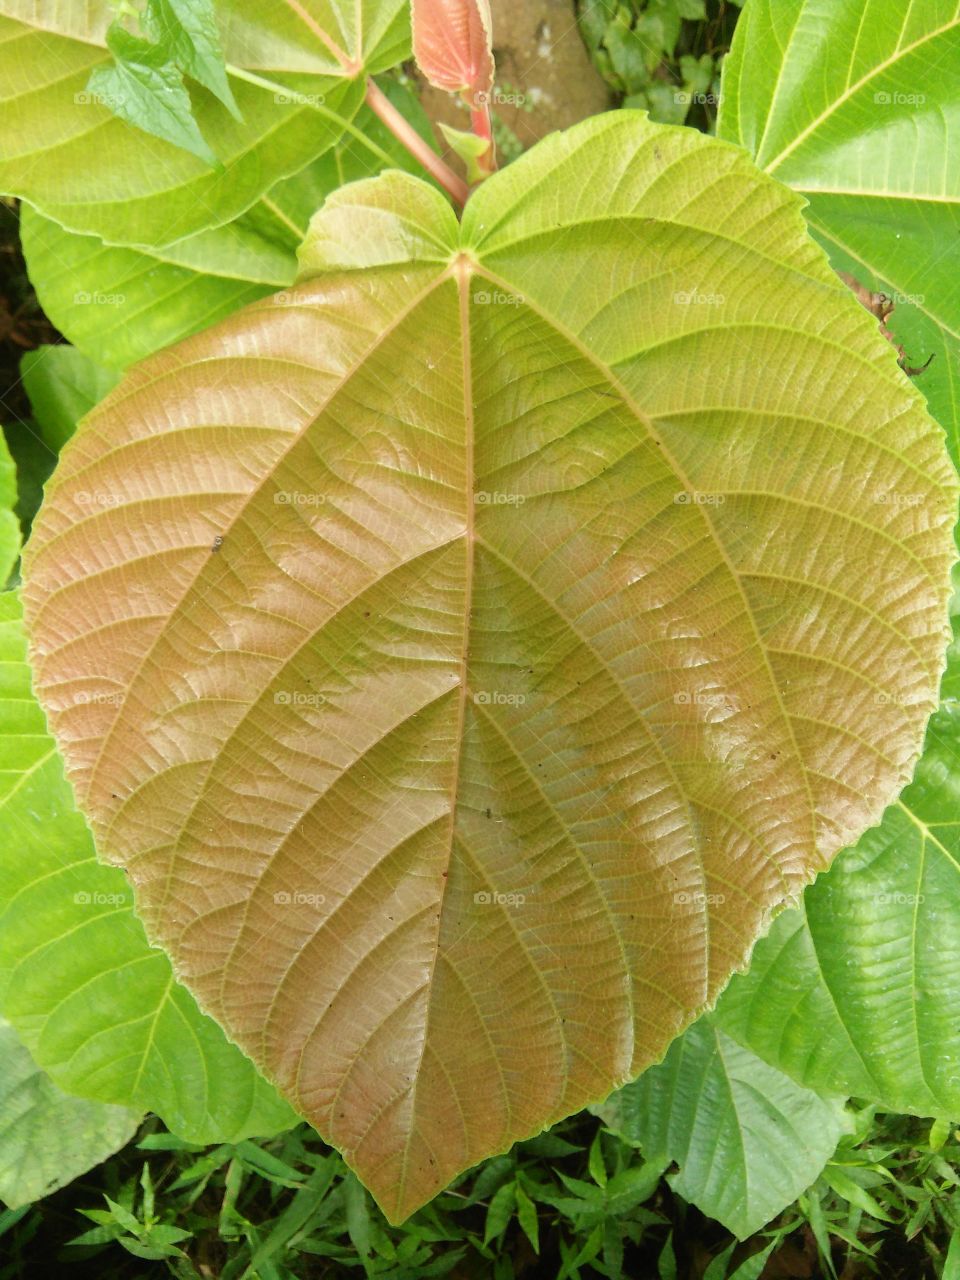 A fig leaf......